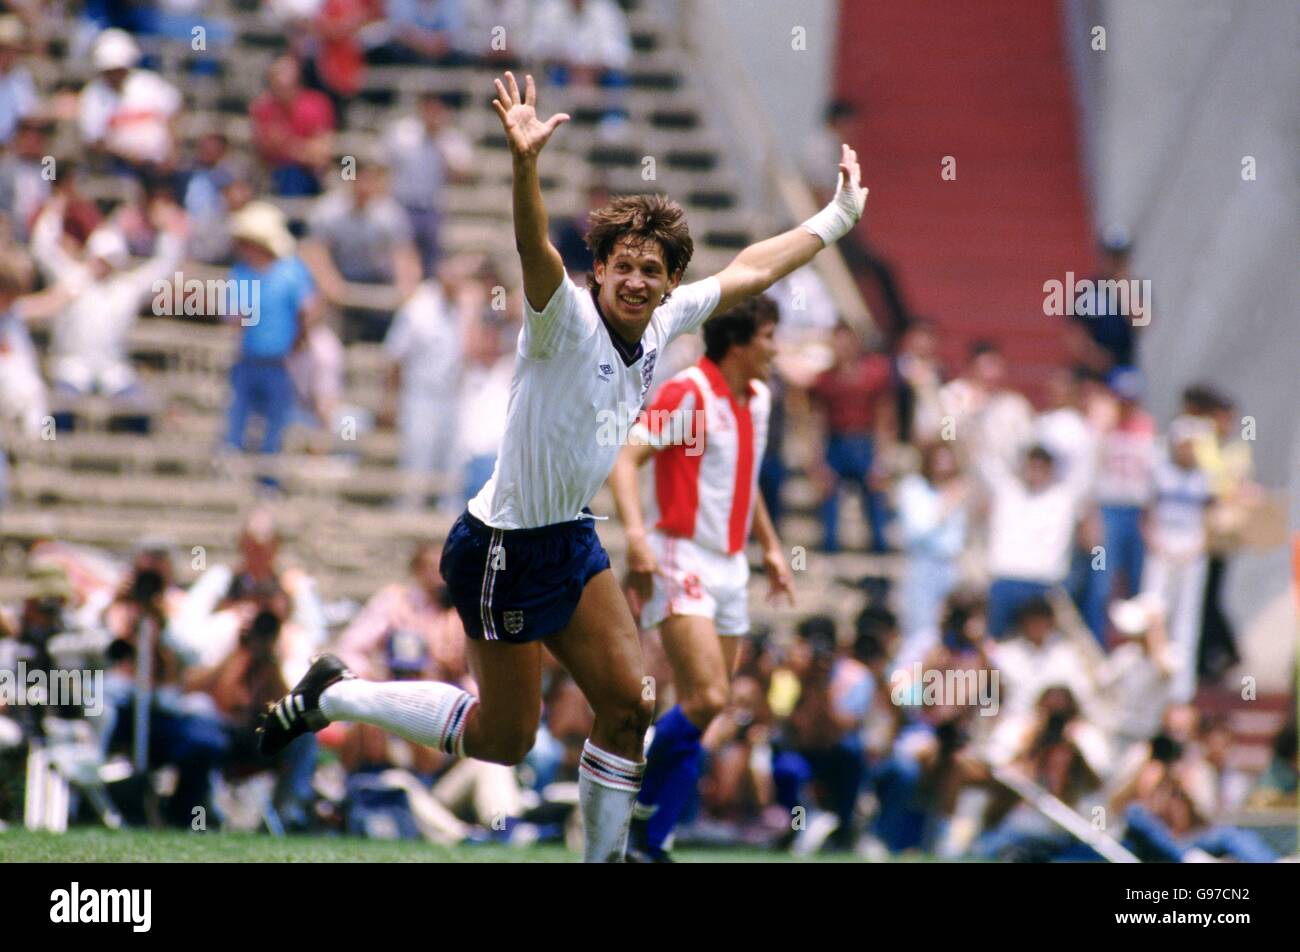 Calcio - Coppa del mondo Messico 1986 - secondo turno - Inghilterra / Paraguay. Gary Lineker dell'Inghilterra celebra uno dei suoi due obiettivi. Foto Stock